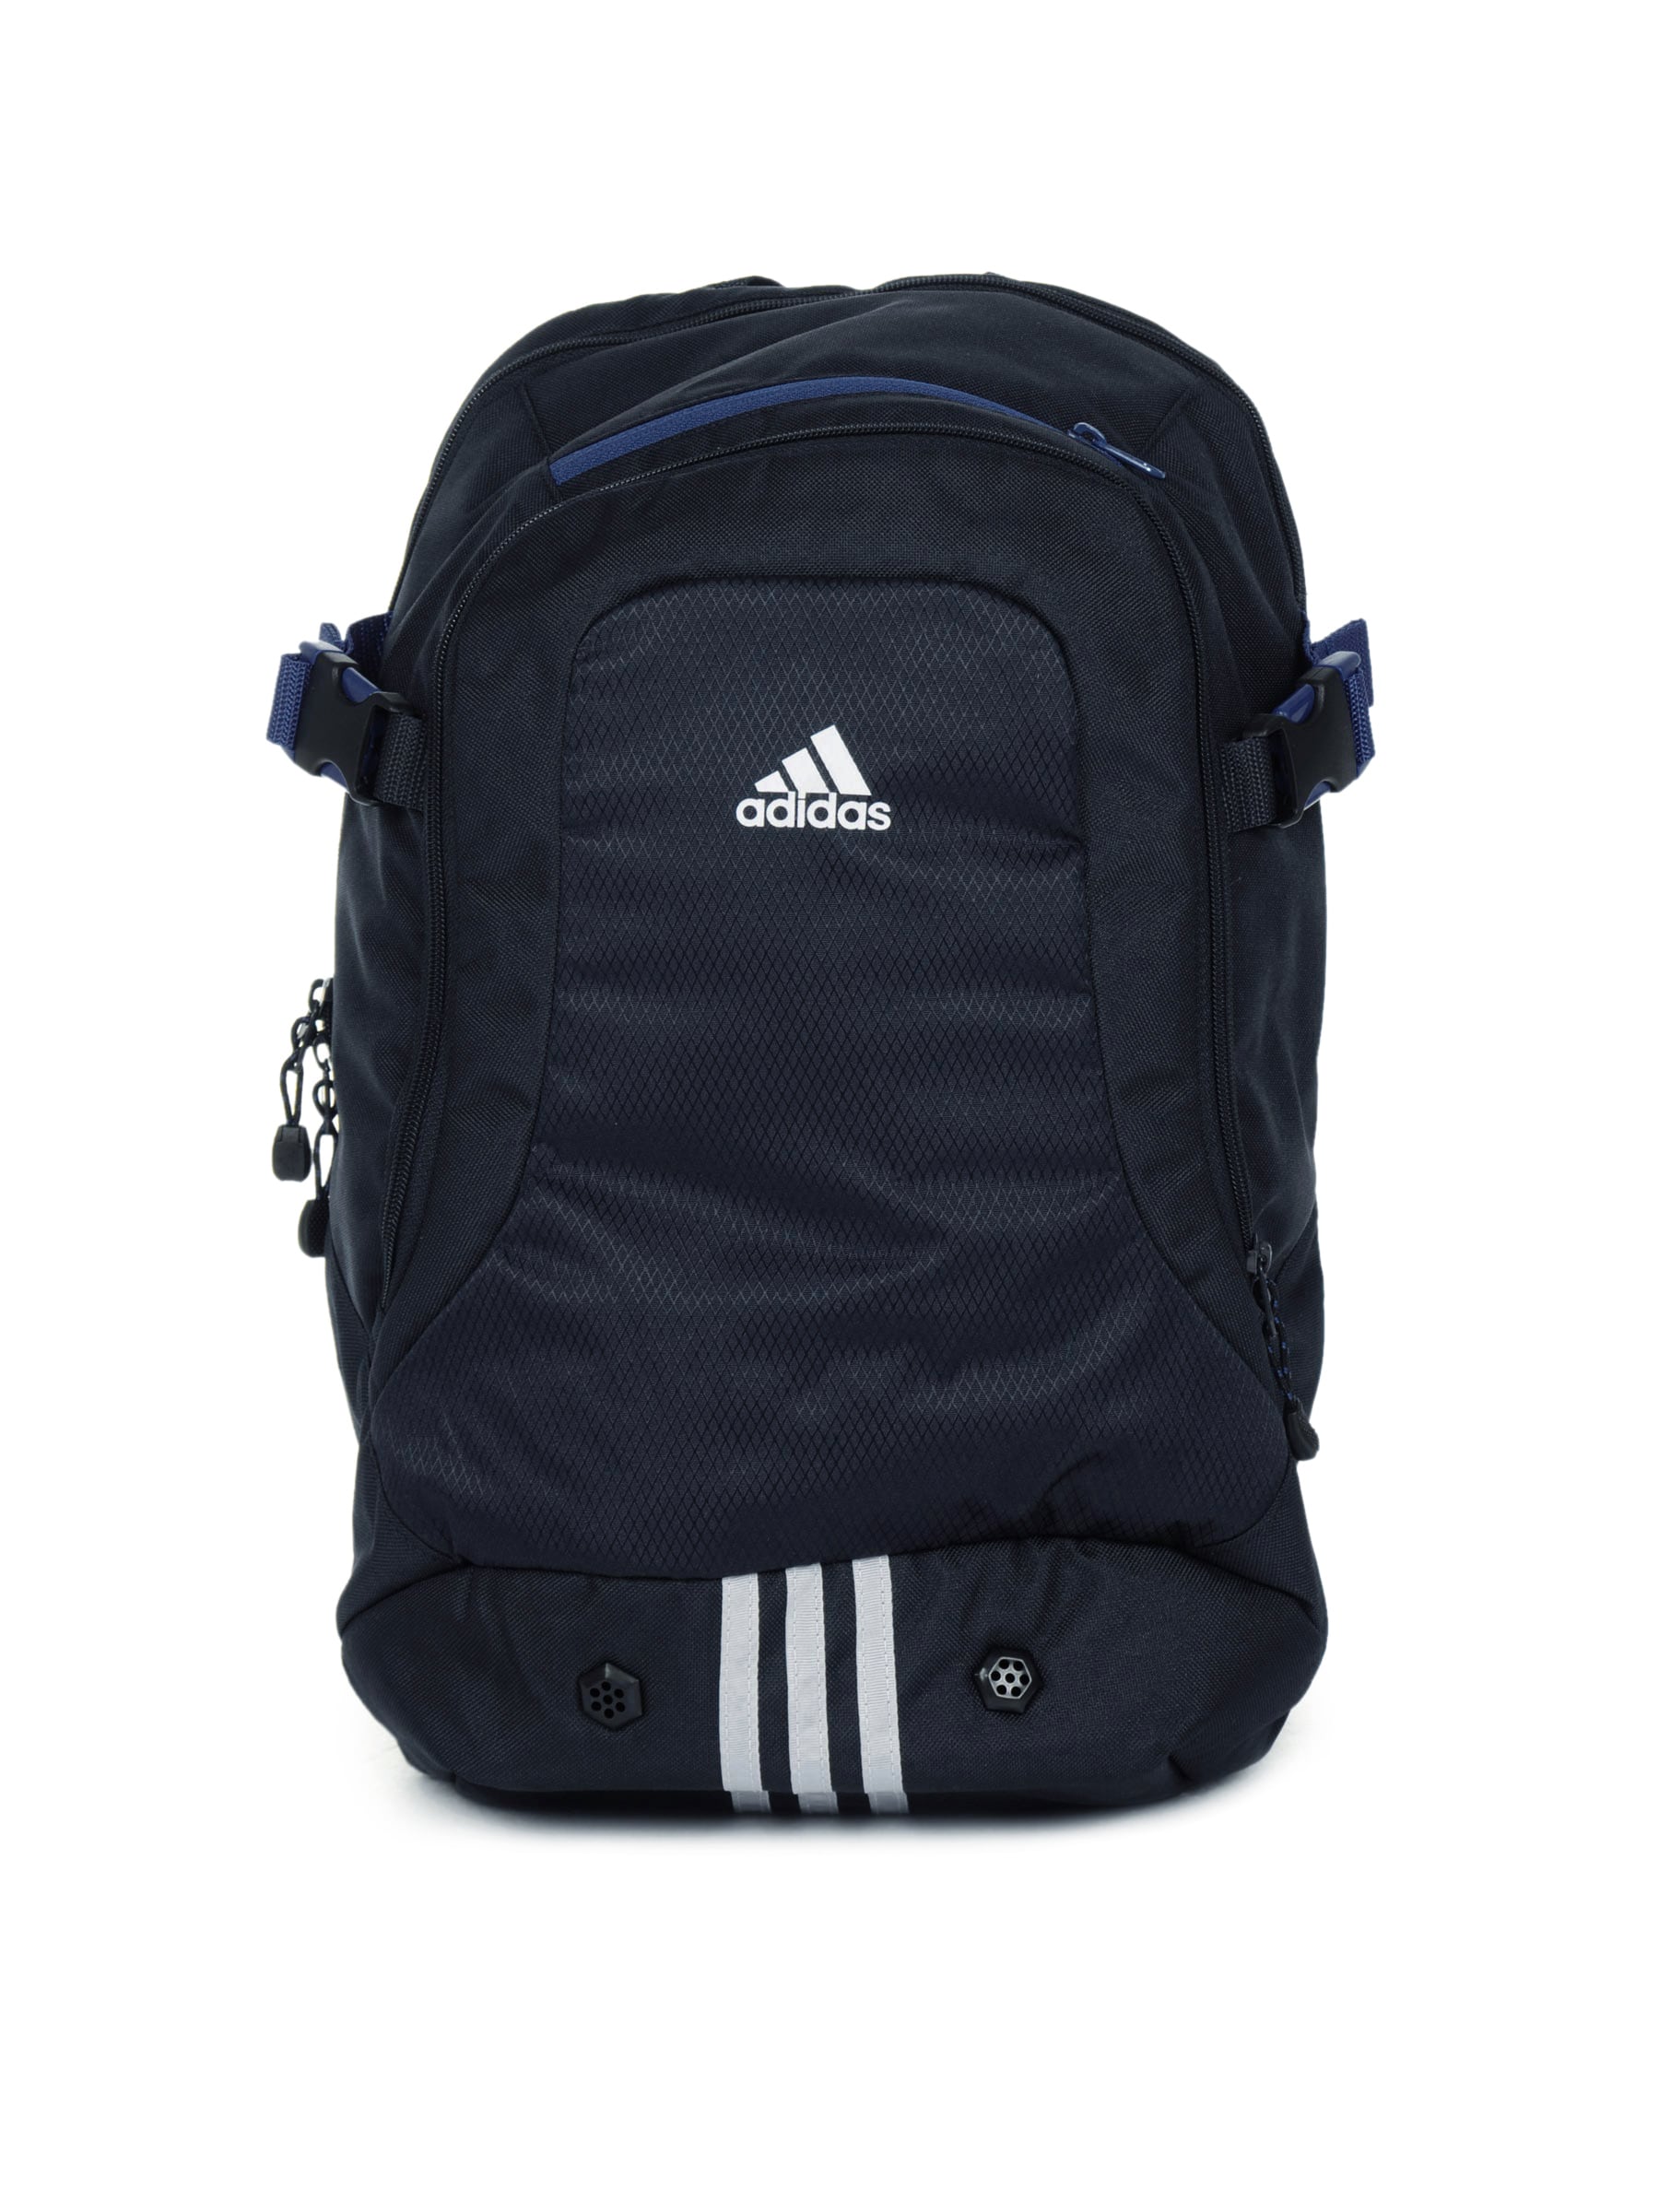 ADIDAS Unisex Navy Blue Backpack